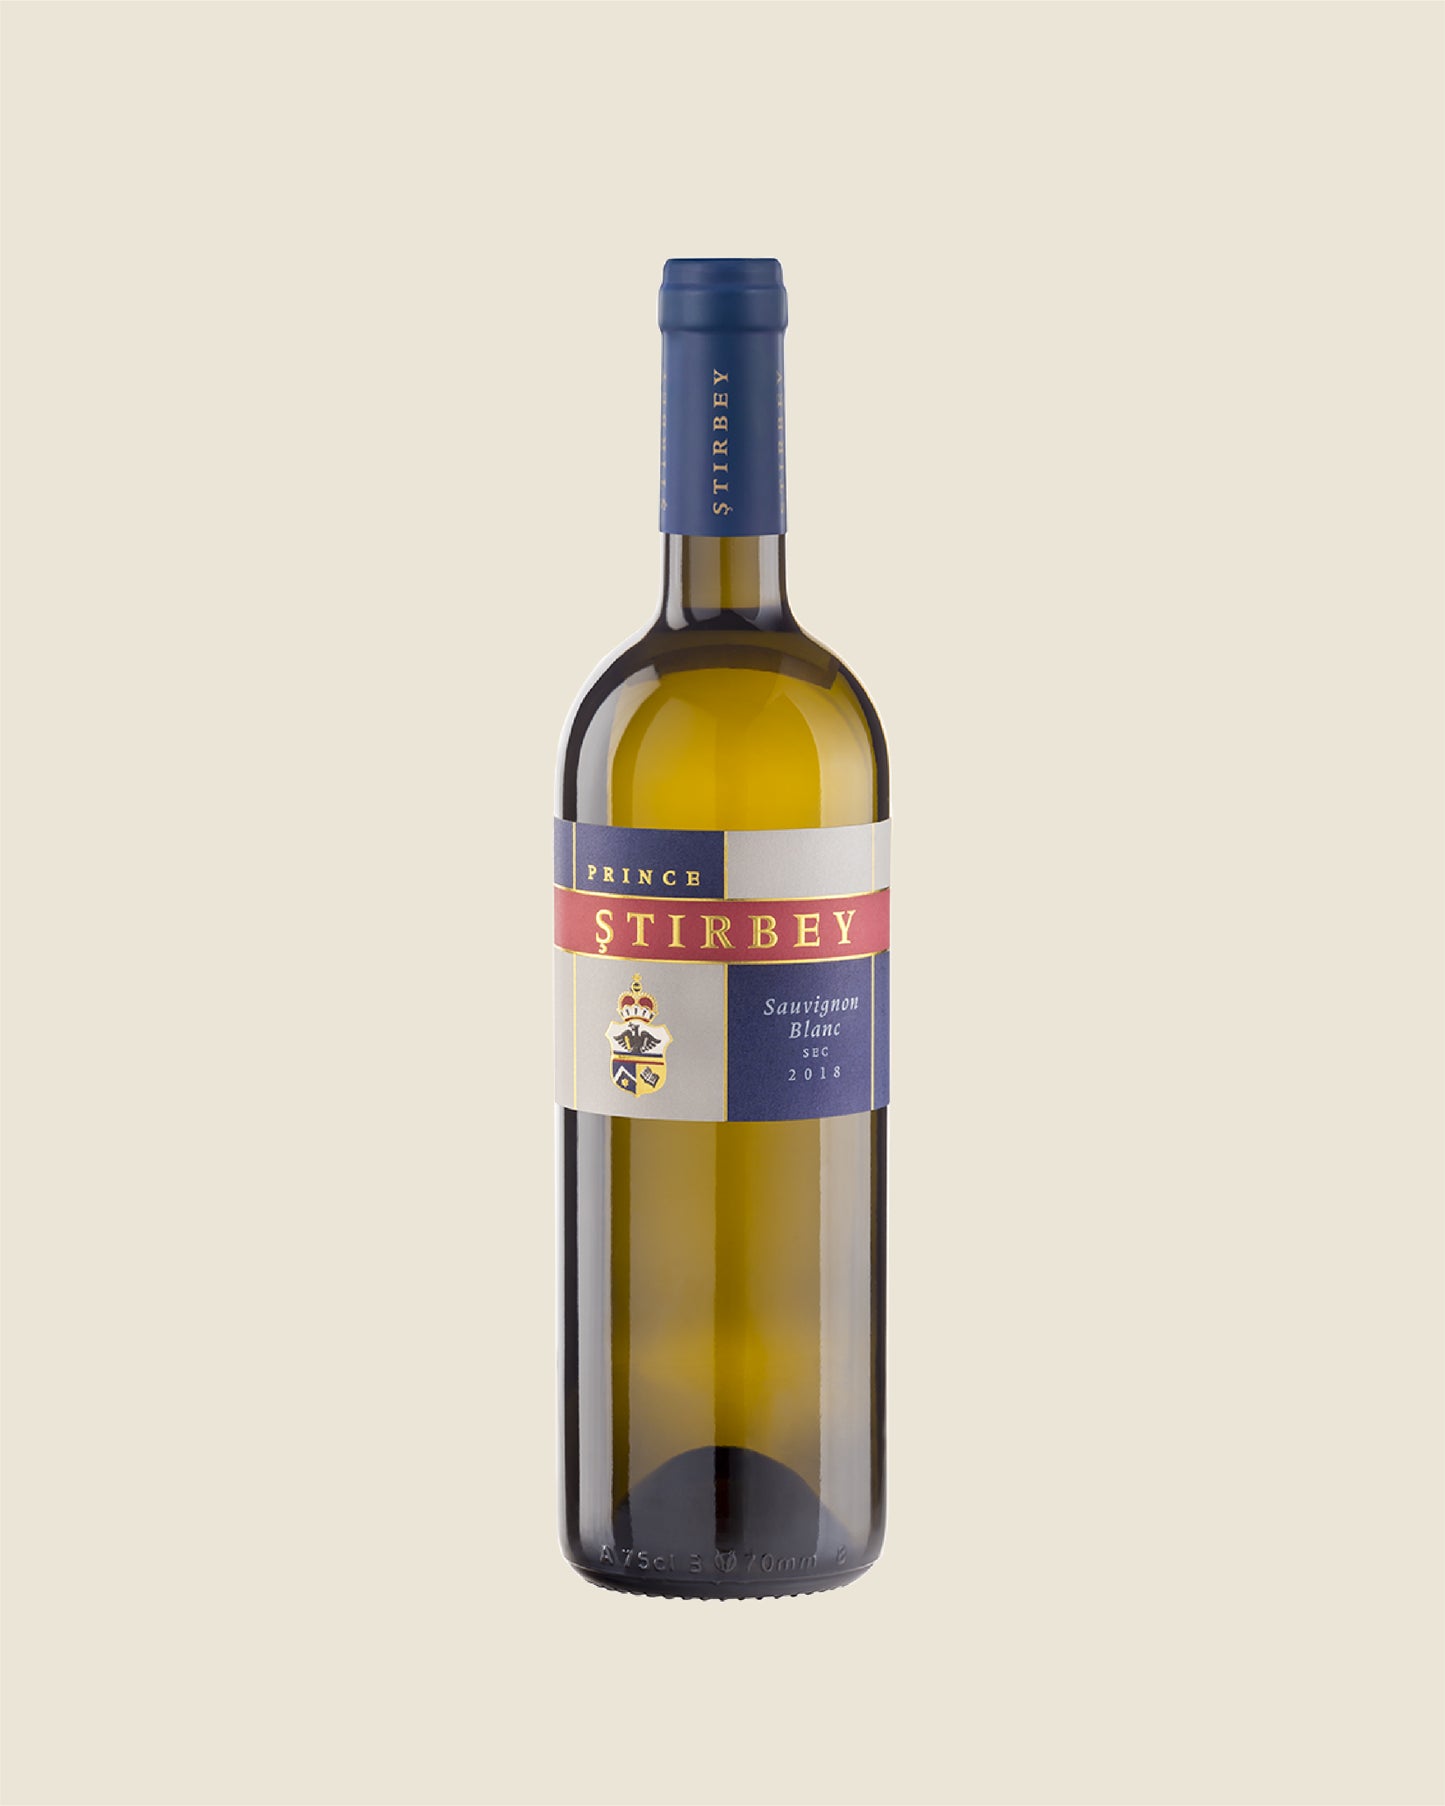 Discover PRINCE STIRBEY Whites - Cramposie + Sauvignon Blanc + Tamaioasa - Dragasani IGT, Romania